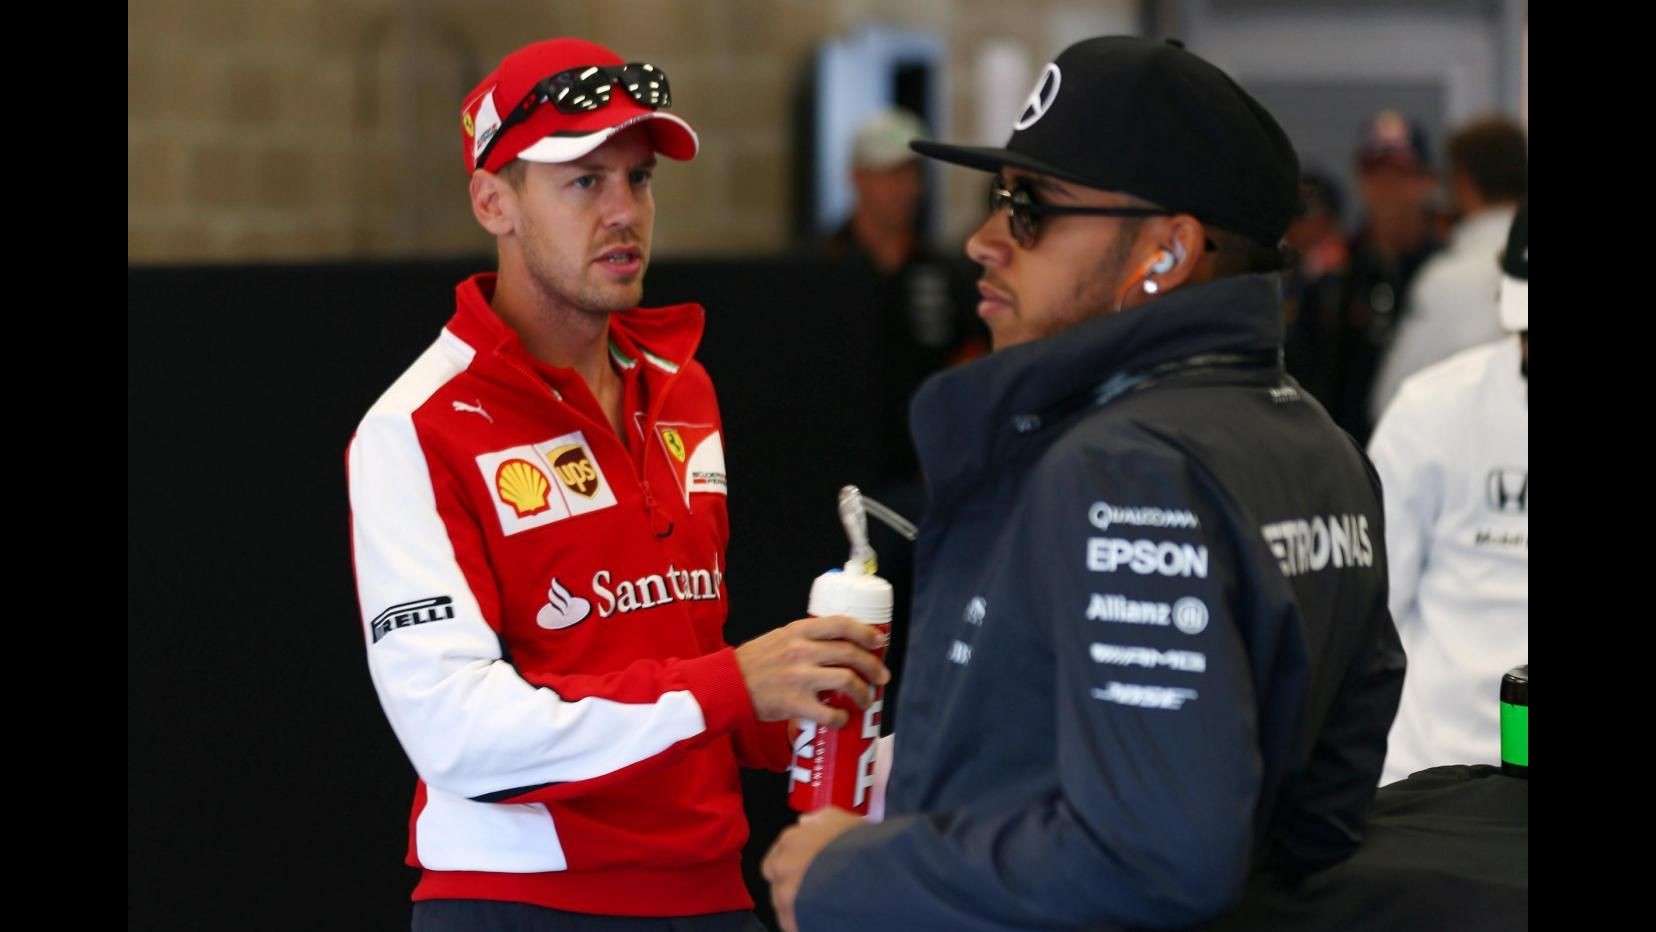 F1, Vettel attacca Pirelli: Gomma esplosa, fatto inaccettabile